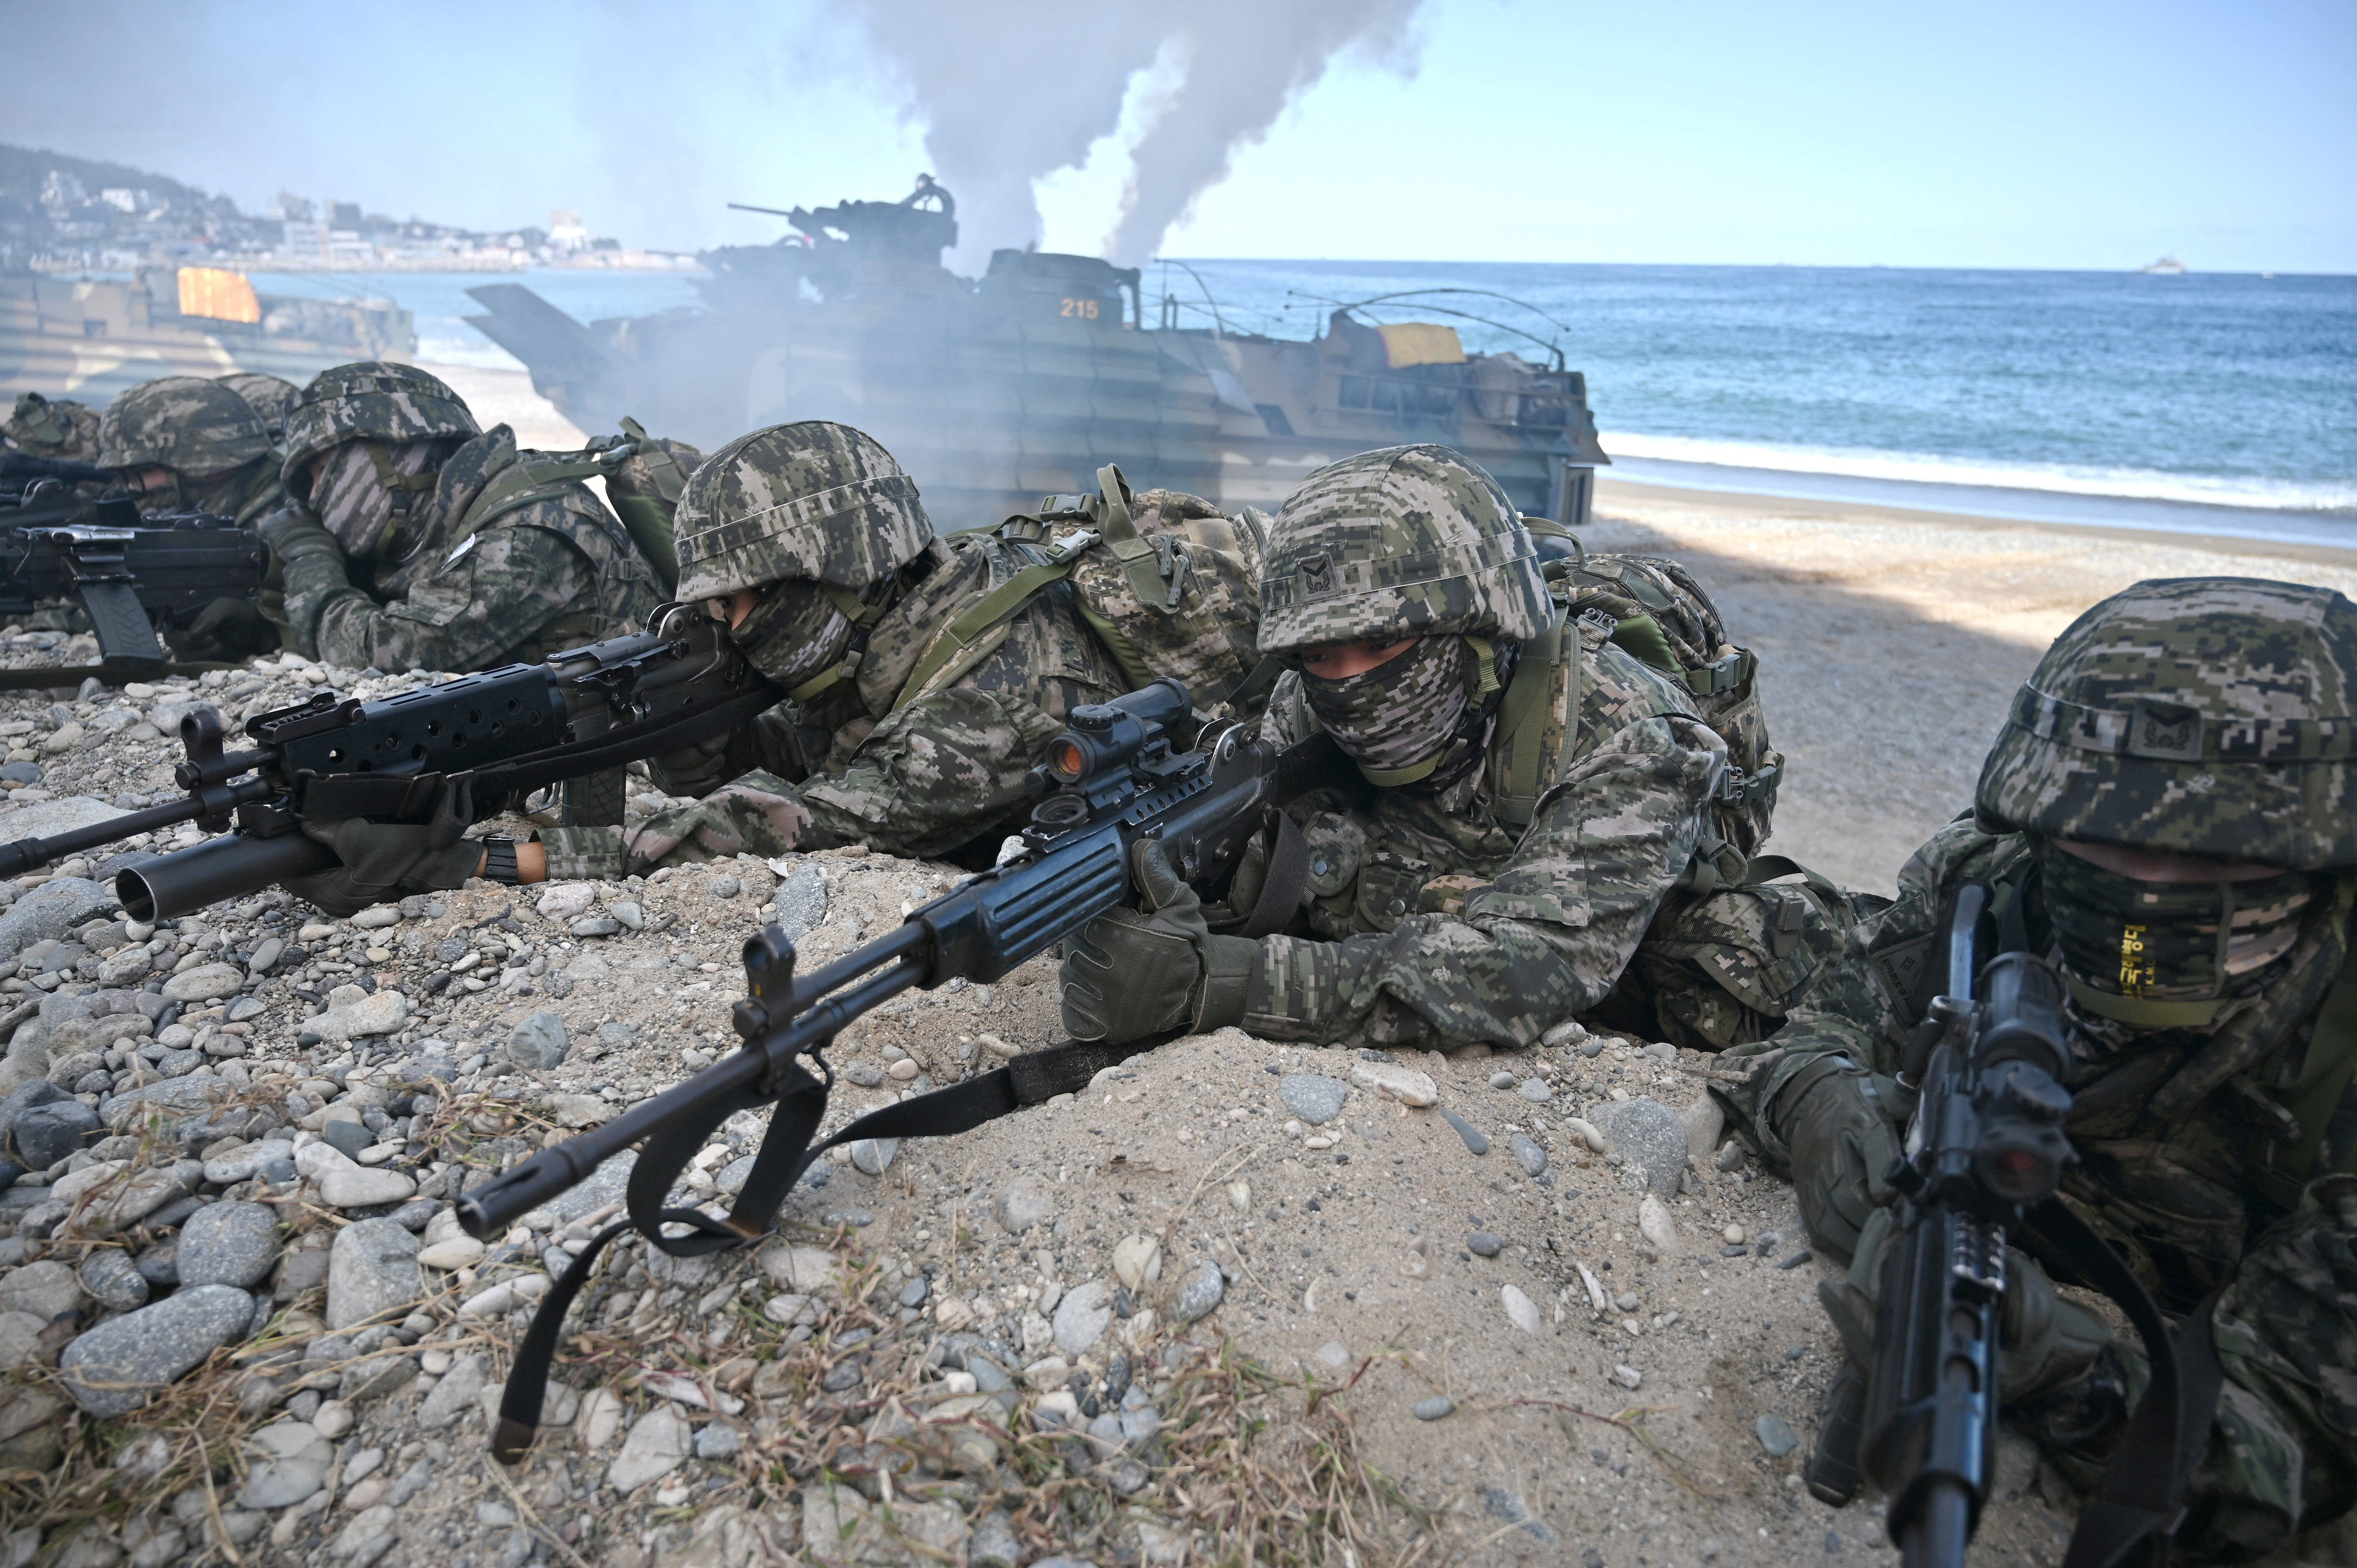 Hoguk military exercise